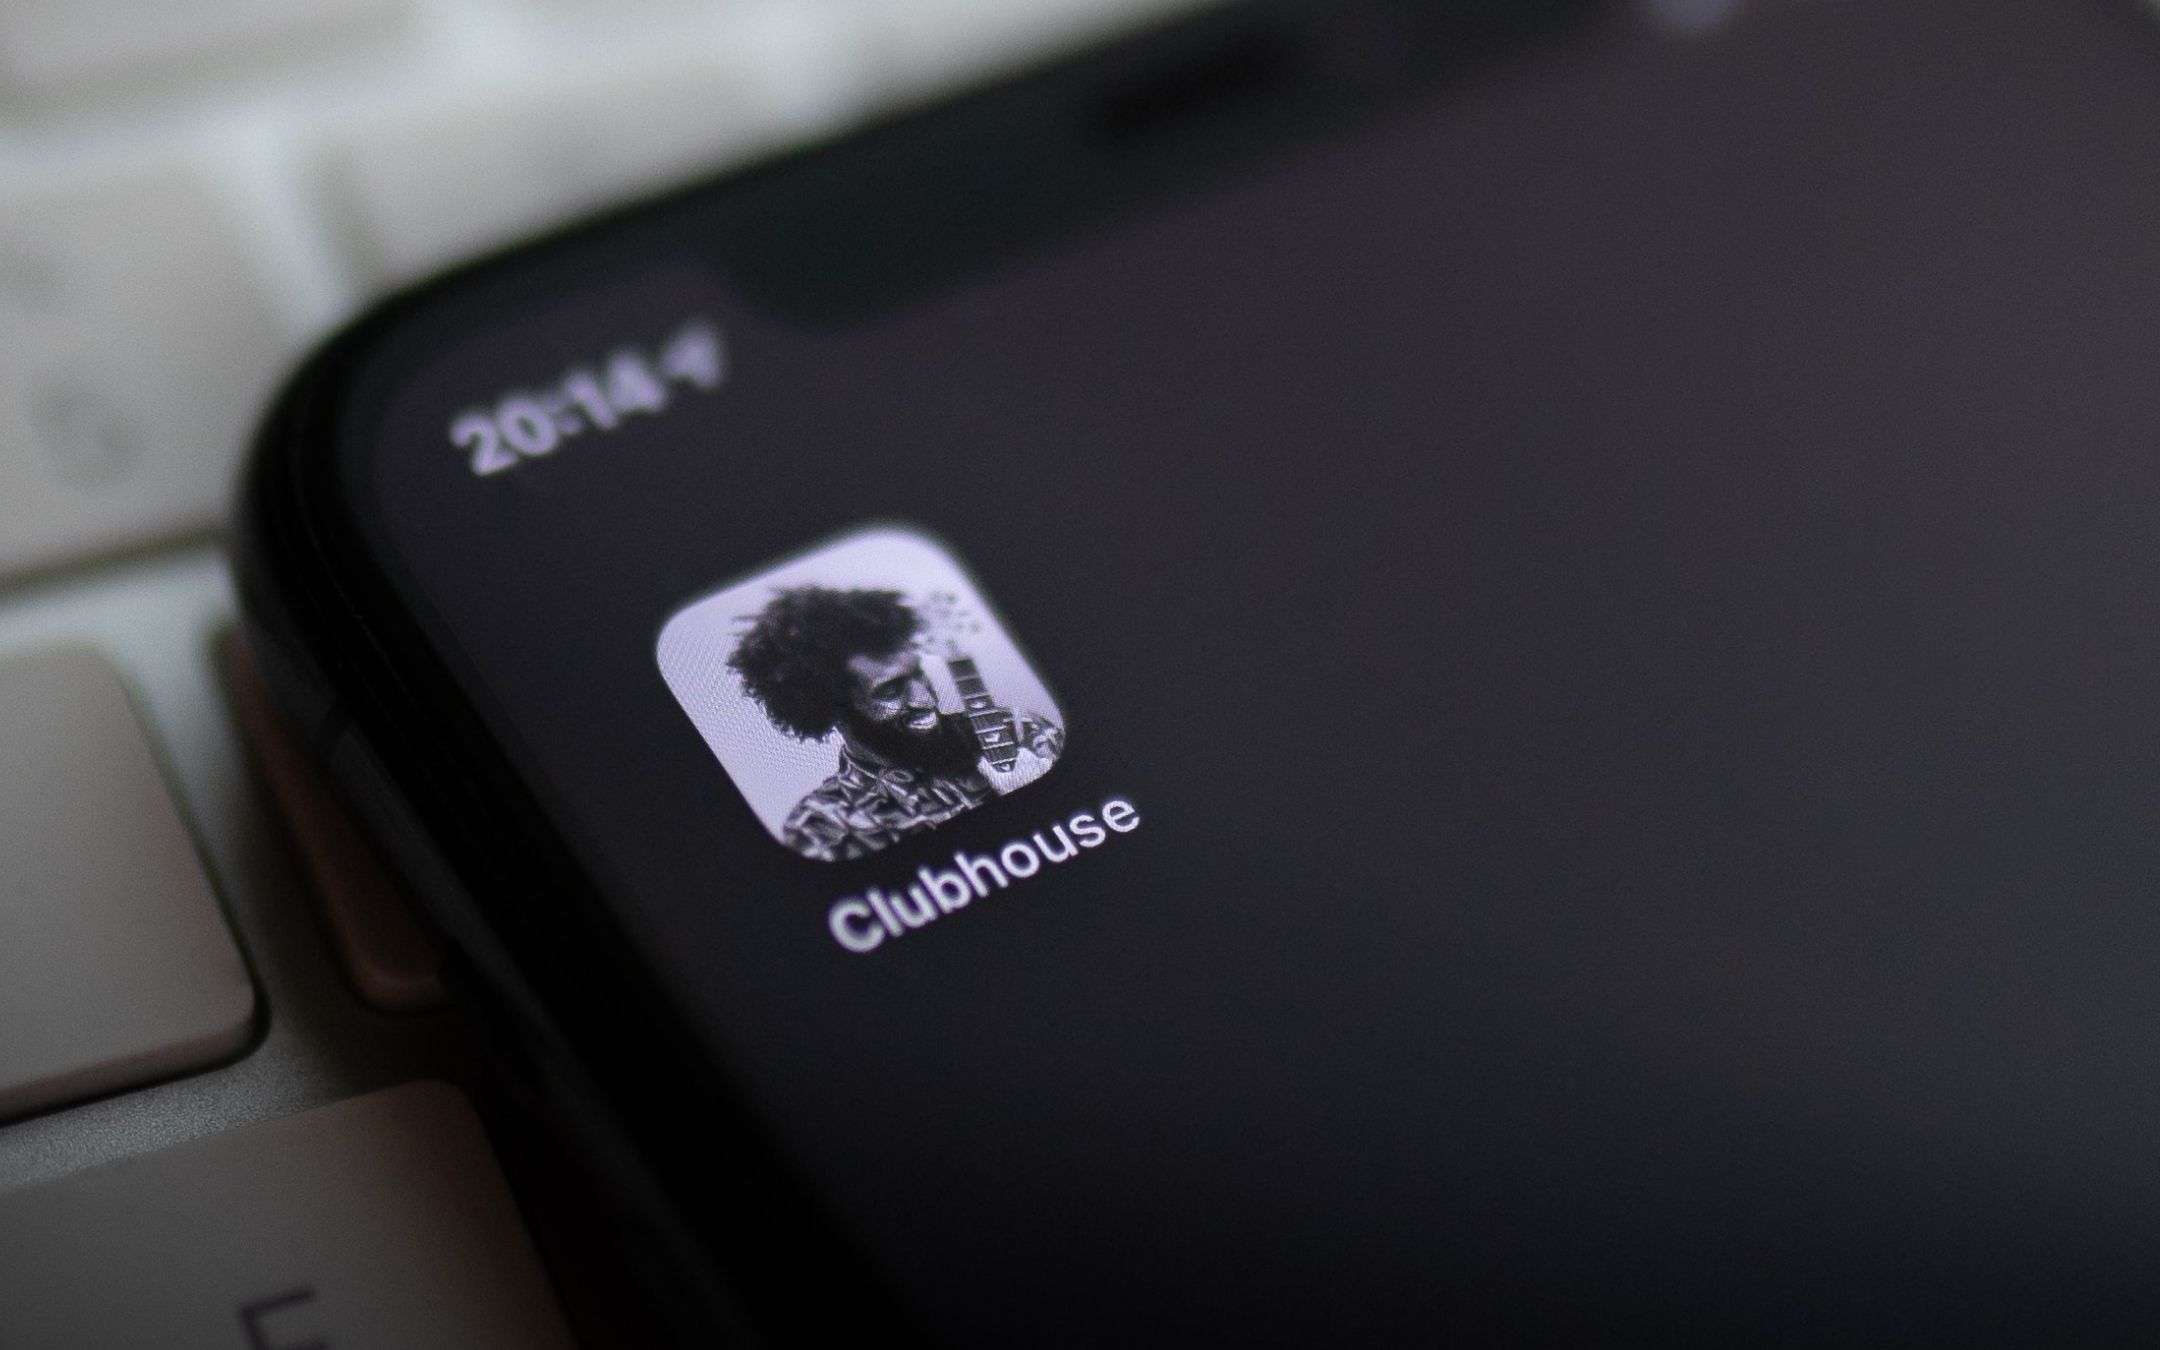 Clubhouse arriva su Android, ma solo su invito